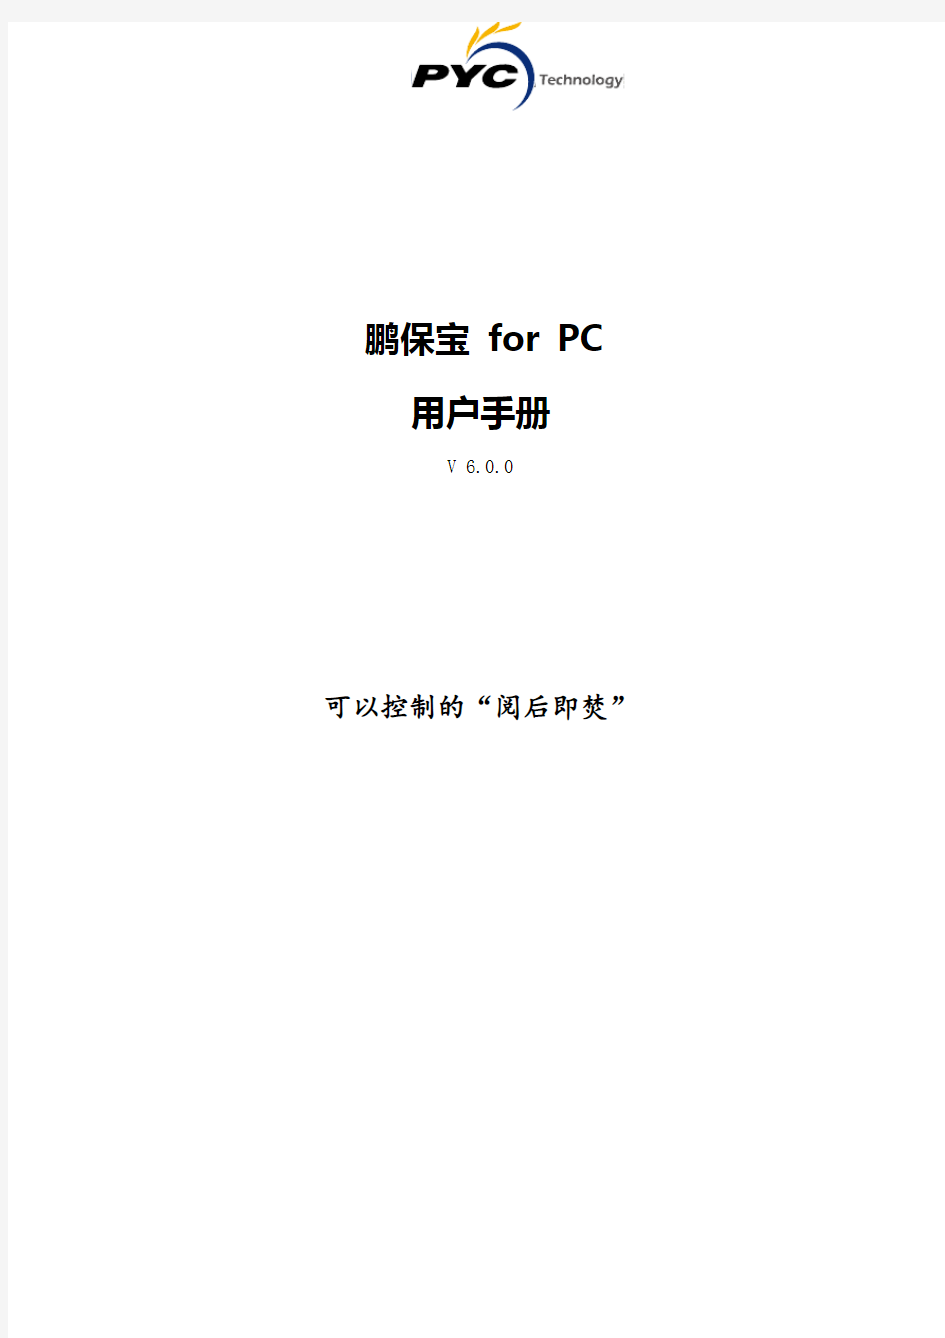 鹏保宝+for+PC+用户手册_V6.0.0